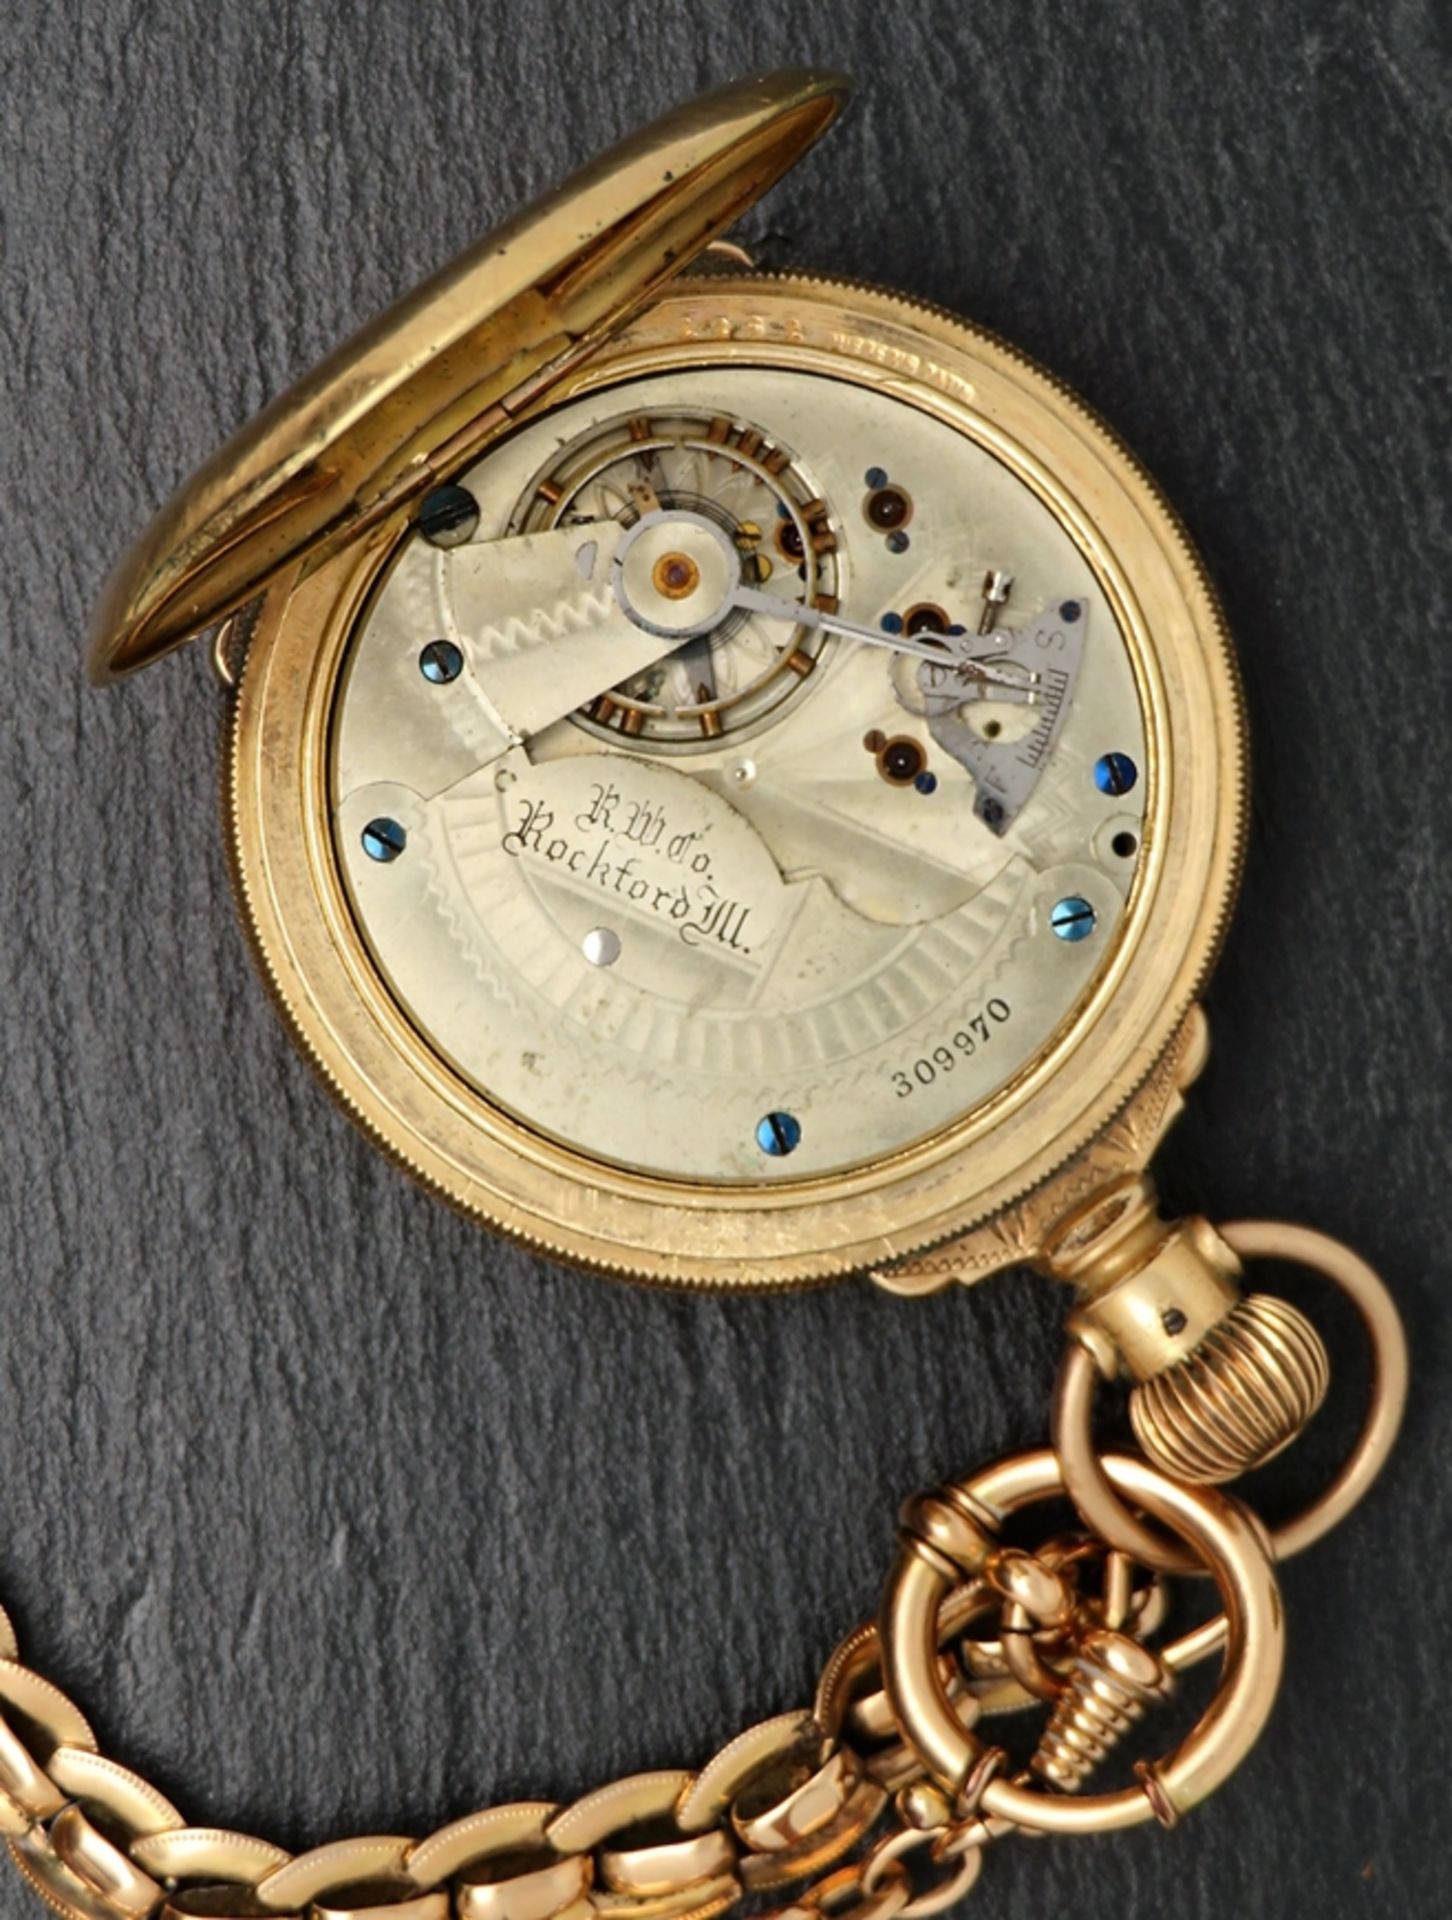 Taschenuhr mit Uhrenkette, Rockford, Gehäuse und Uhrenkette vergoldet, Kronenaufzug, Werk läuft ni - Image 3 of 3